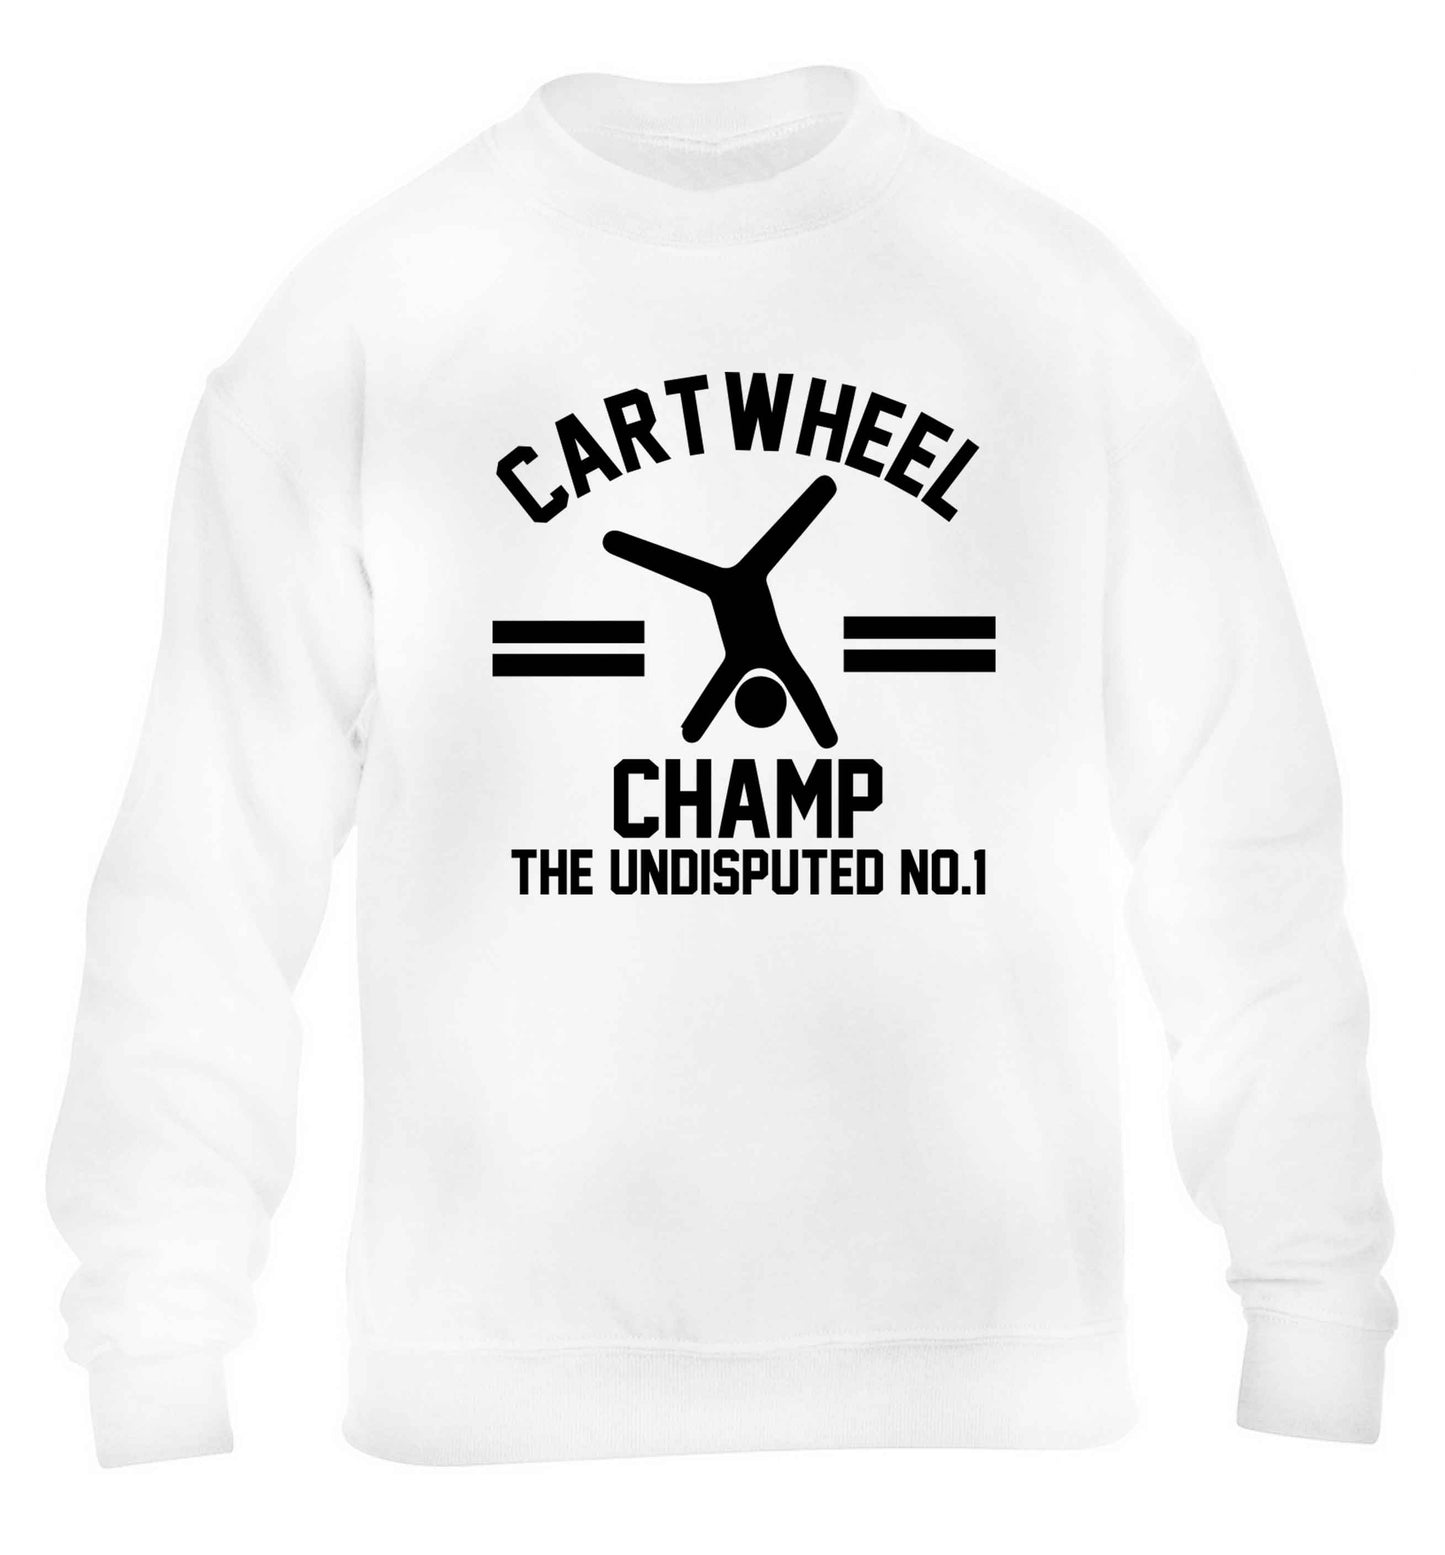 Undisputed cartwheel championship no.1  children's white sweater 12-13 Years